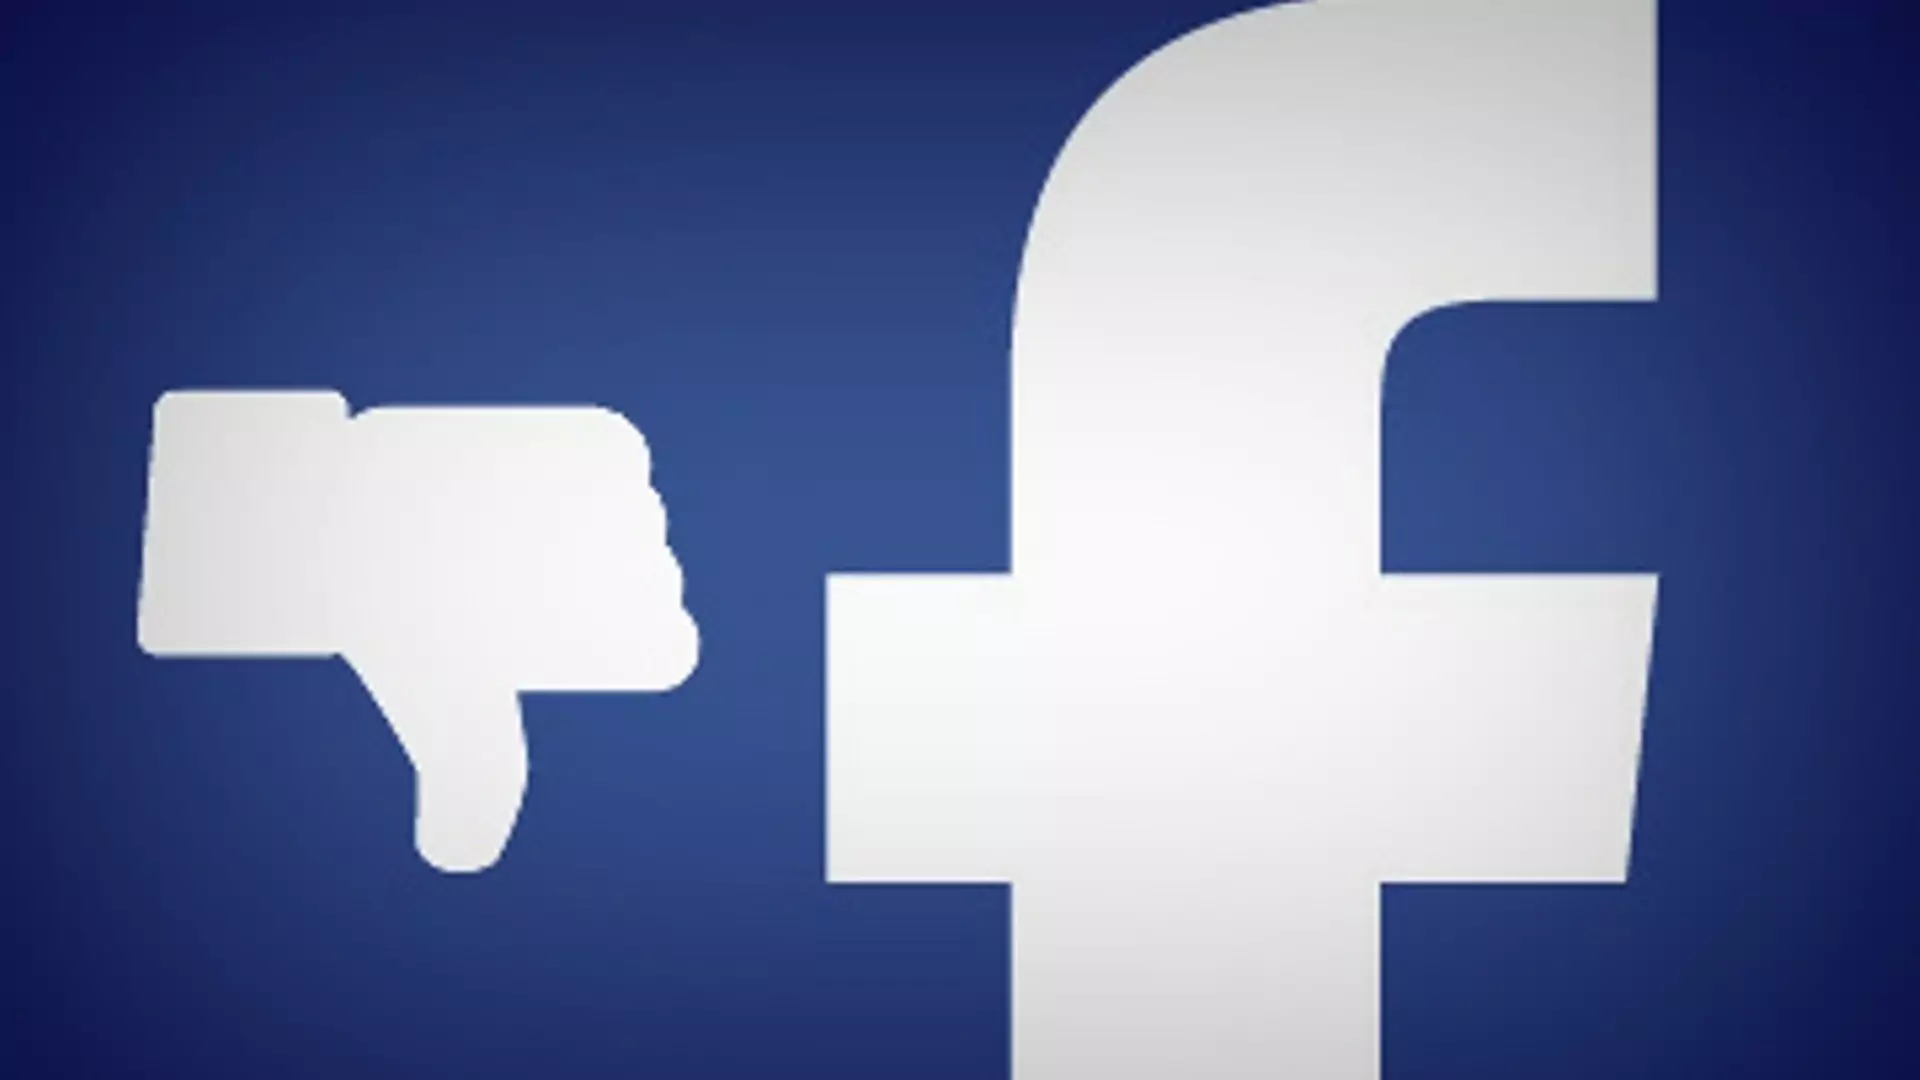 Które informacje usunąć z Facebooka? Sprawdźcie, z czym nie powinniście się obnosić